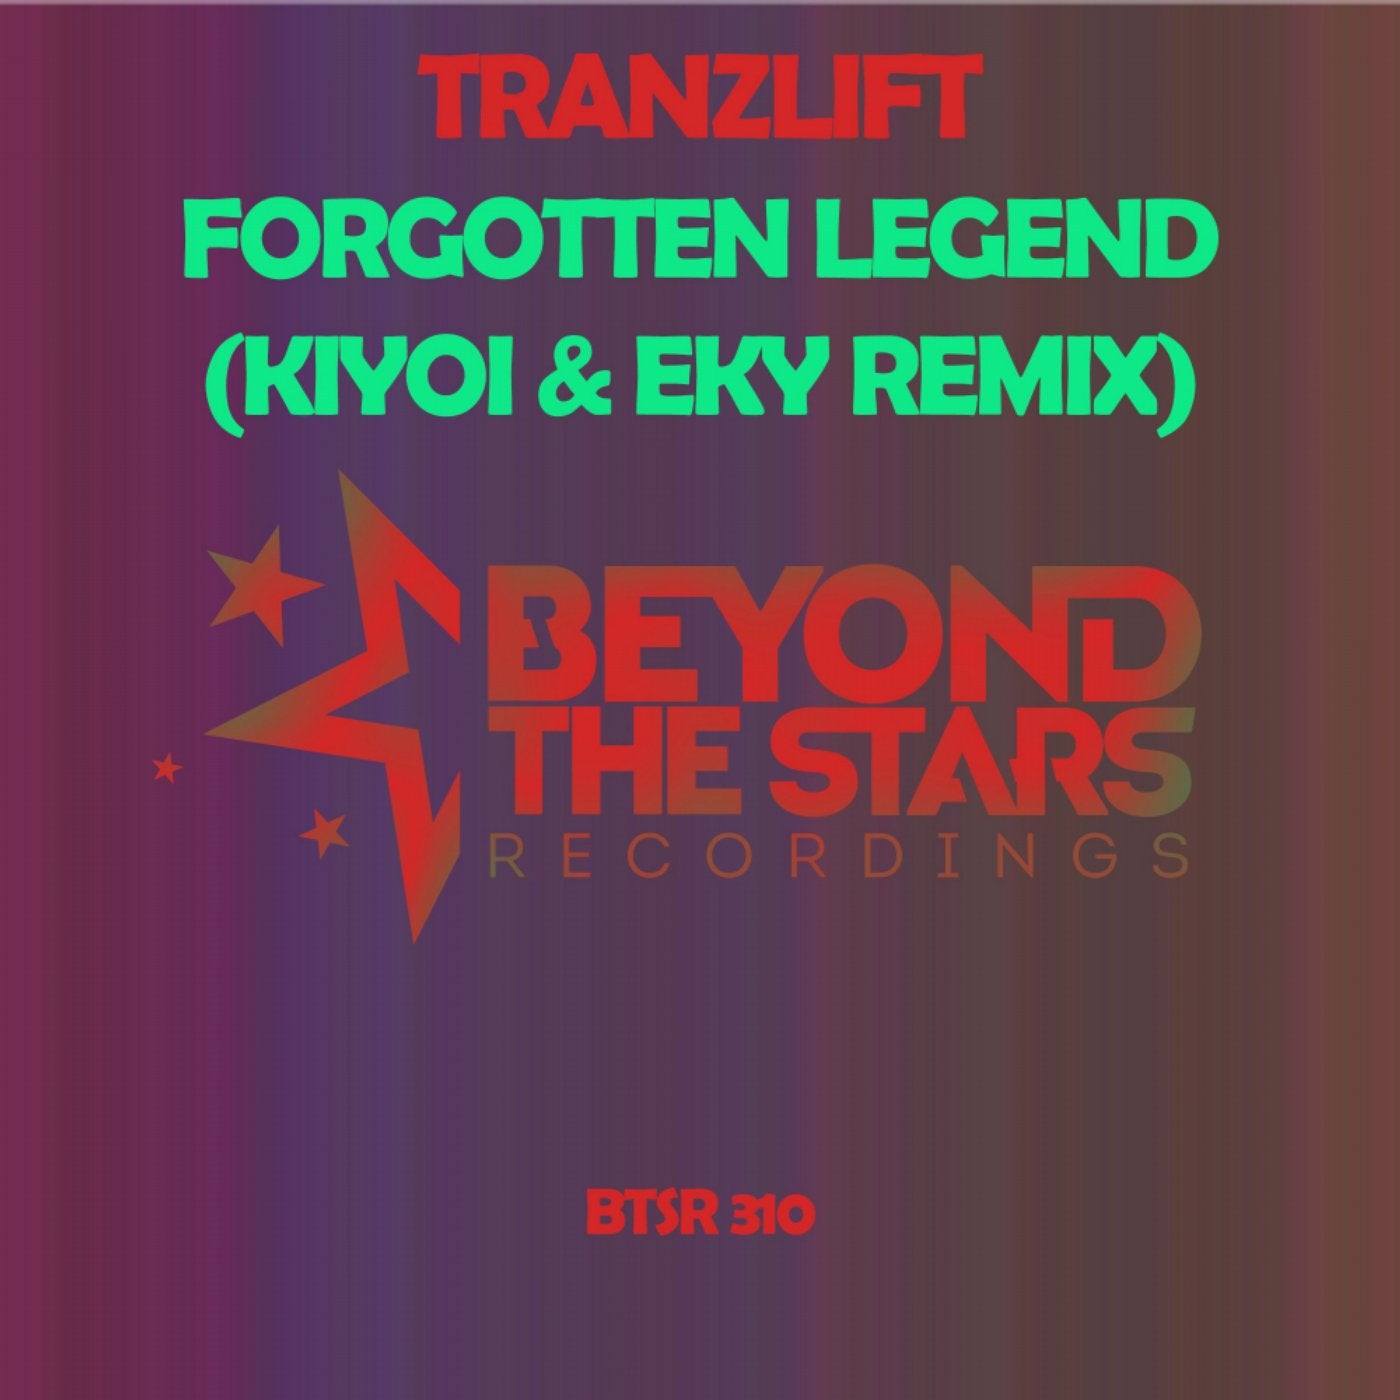 Forgotten Legend (Kiyoi & Eky Remix)